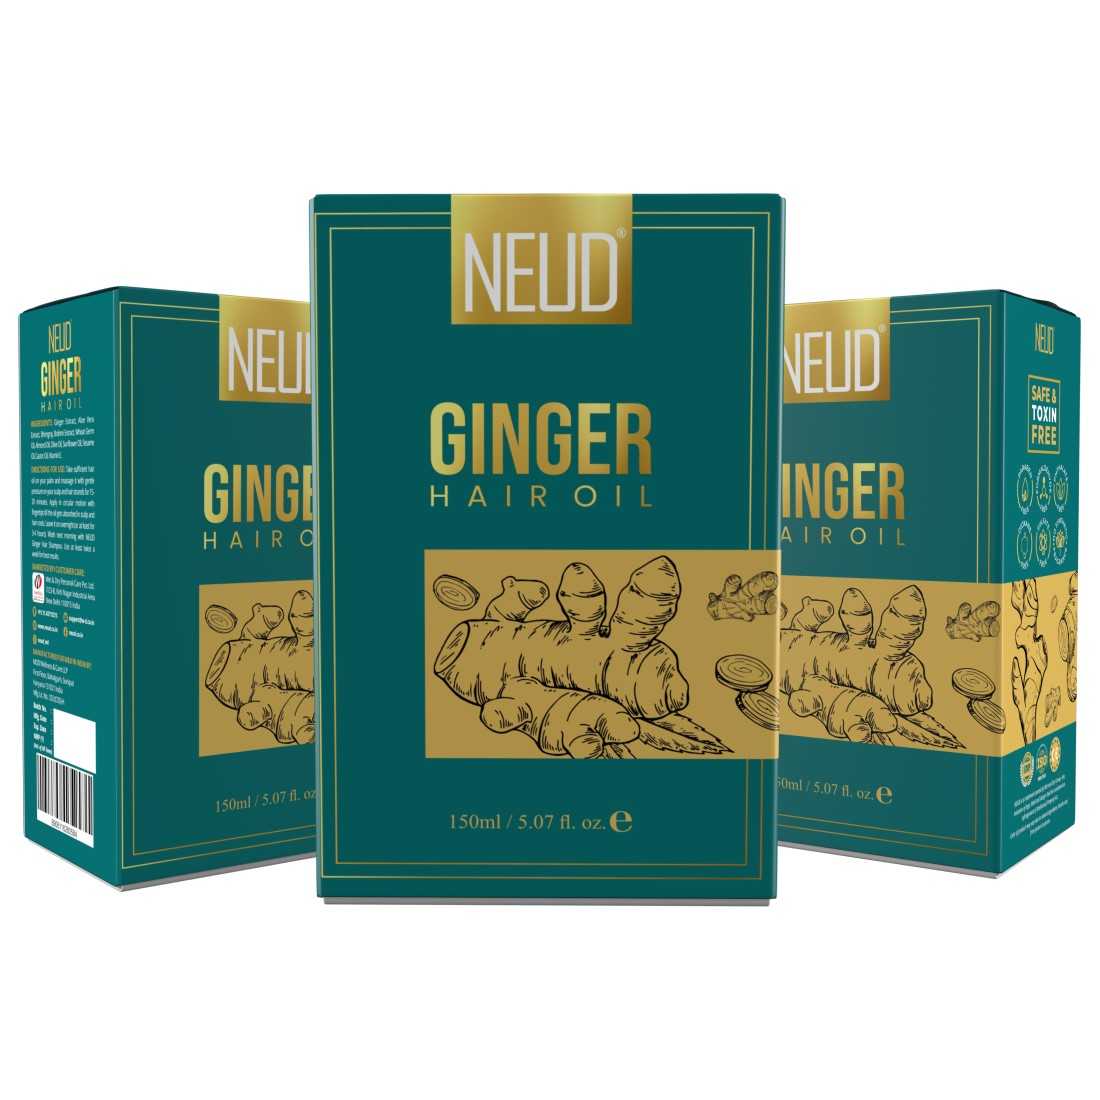 NEUD Ginger Hair Oil for Men & Women - 150 ml